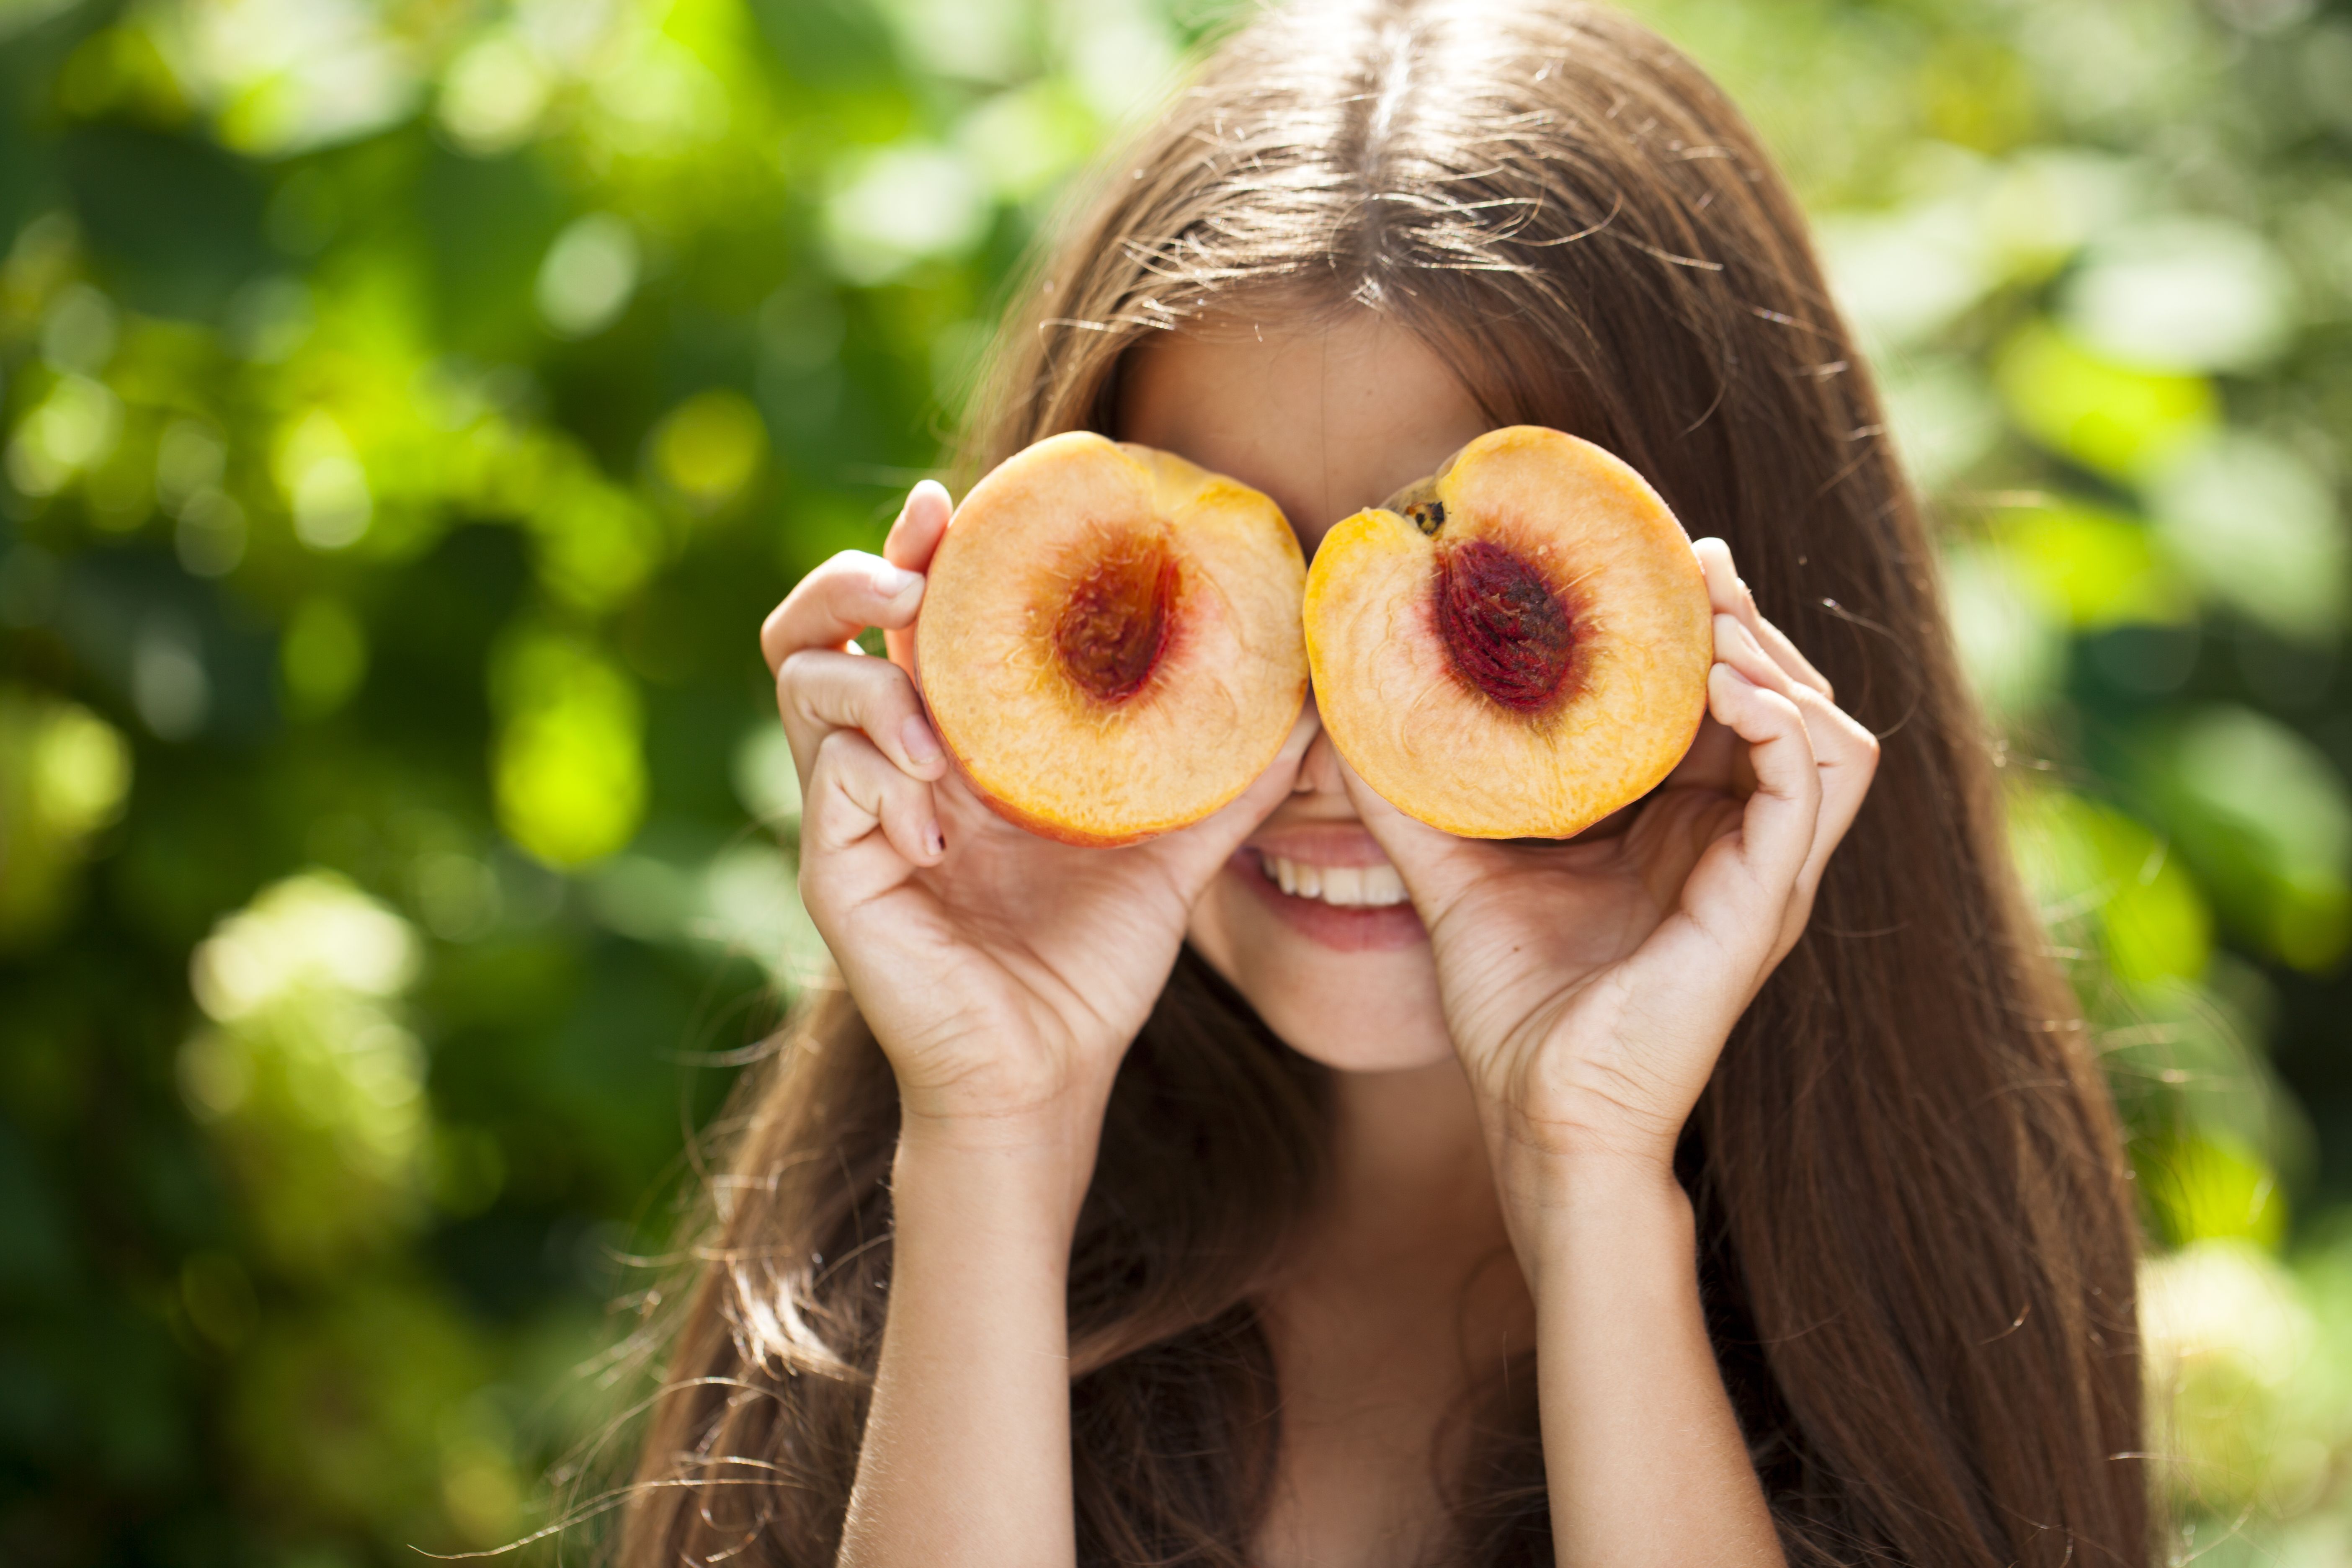 Форма персик у девушки. Девушка с абрикосами. Девушка с персиками. Фотосессия девушка и перс. Девушка ест персик.